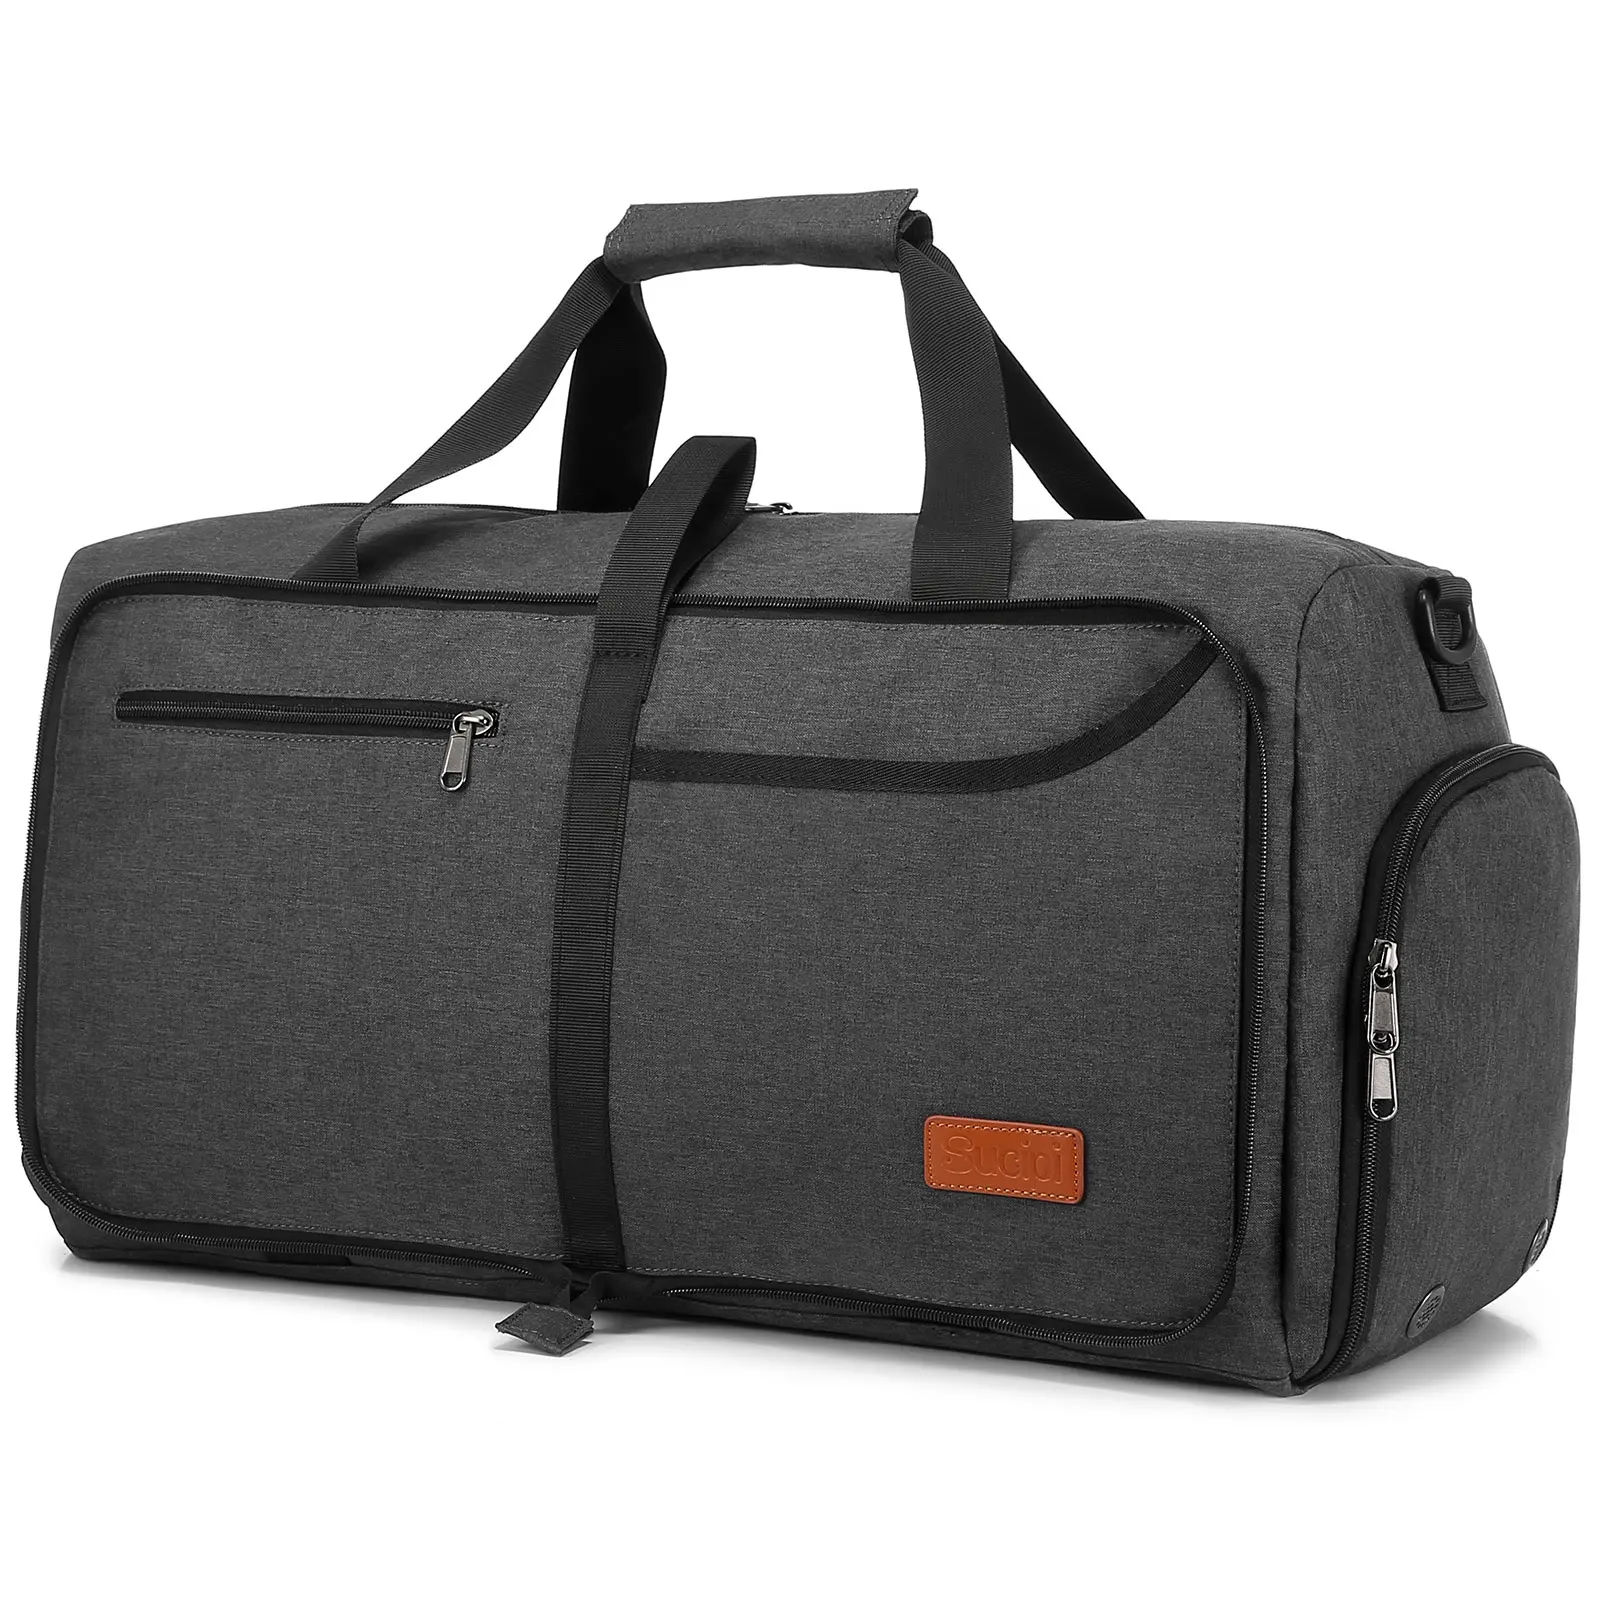 LOVEVOOK Neuzugang Reisetasche mit großer Kapazität Wasserdichte Sport Faltbare Reisetaschen mit Schuh-Nass fach